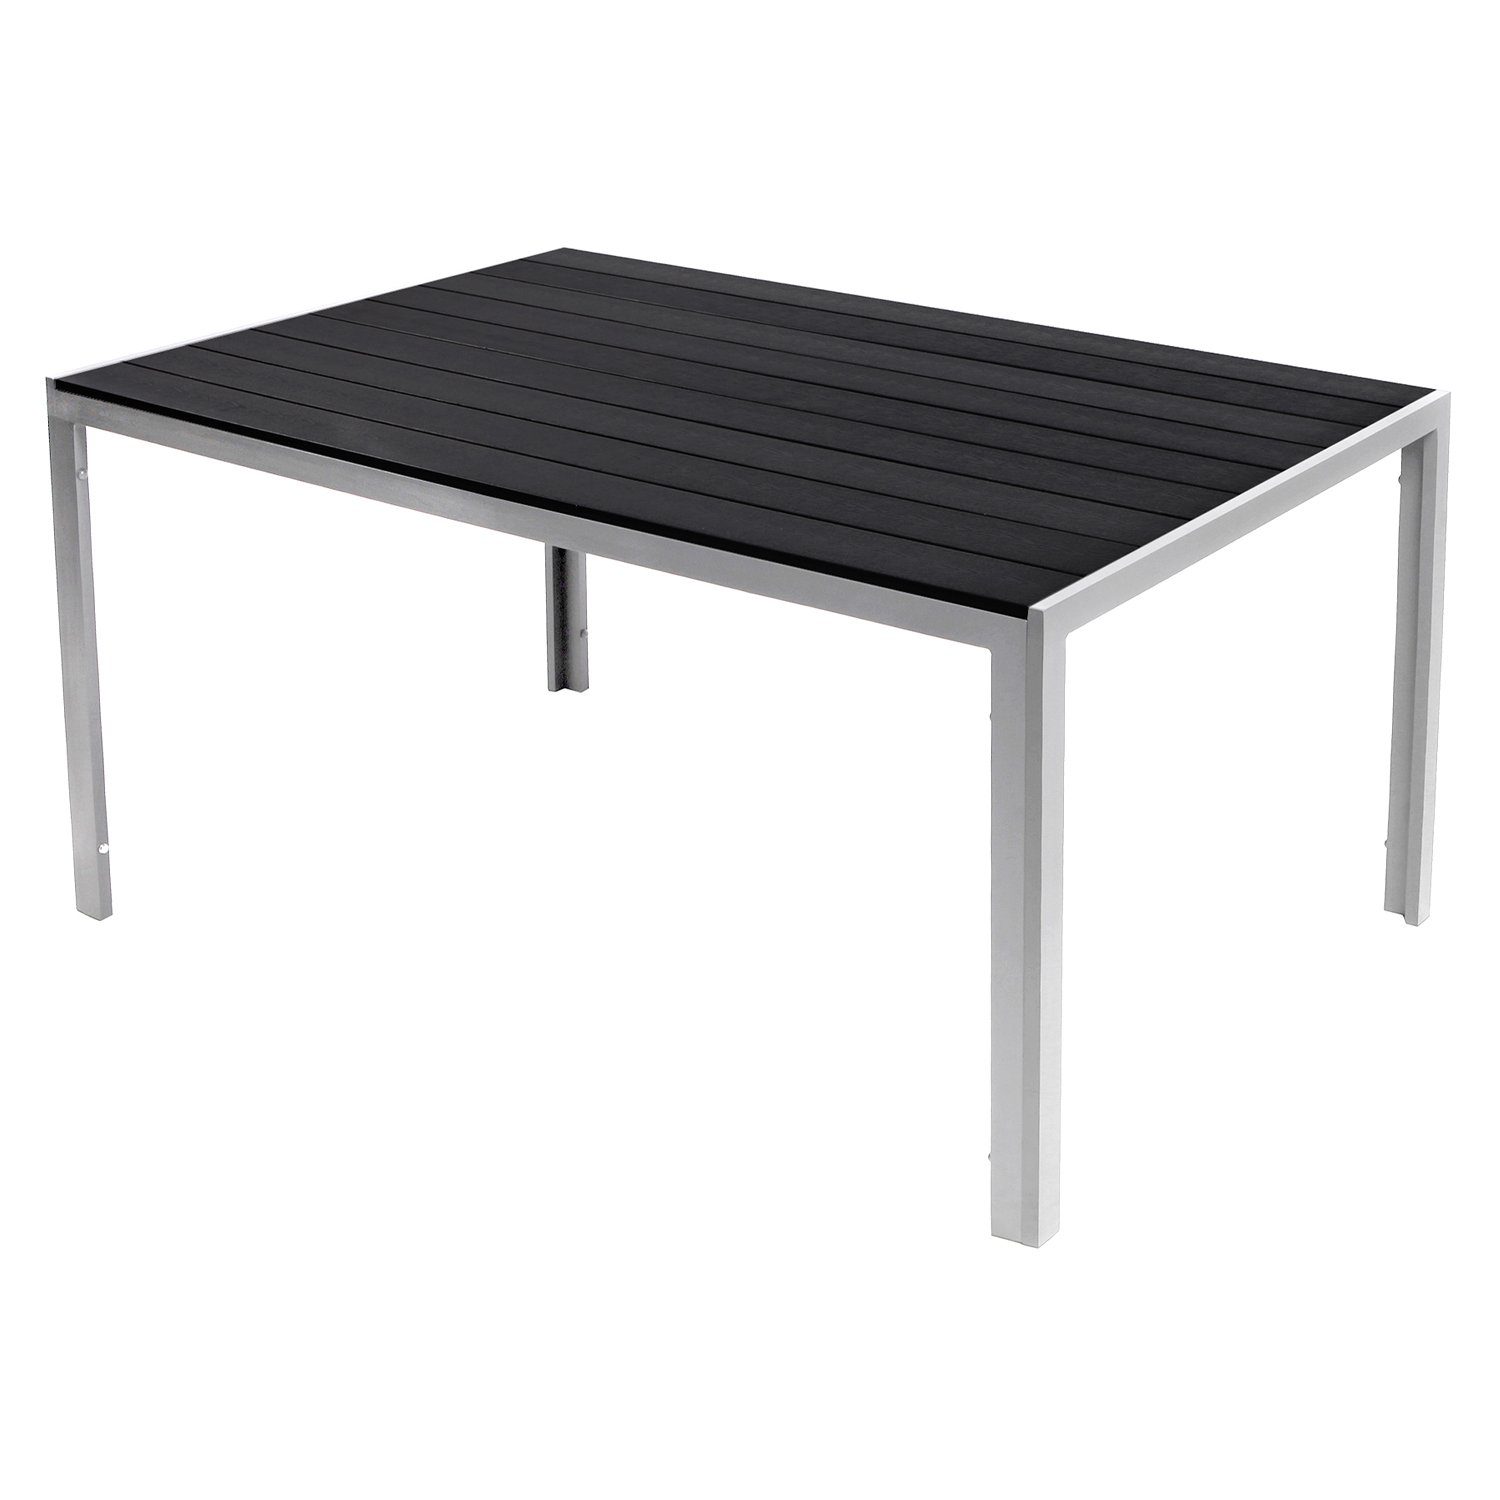 Mojawo Küchentisch XL Non-Wood Gartentisch Aluminium Silber / Schwarz 180x90cm